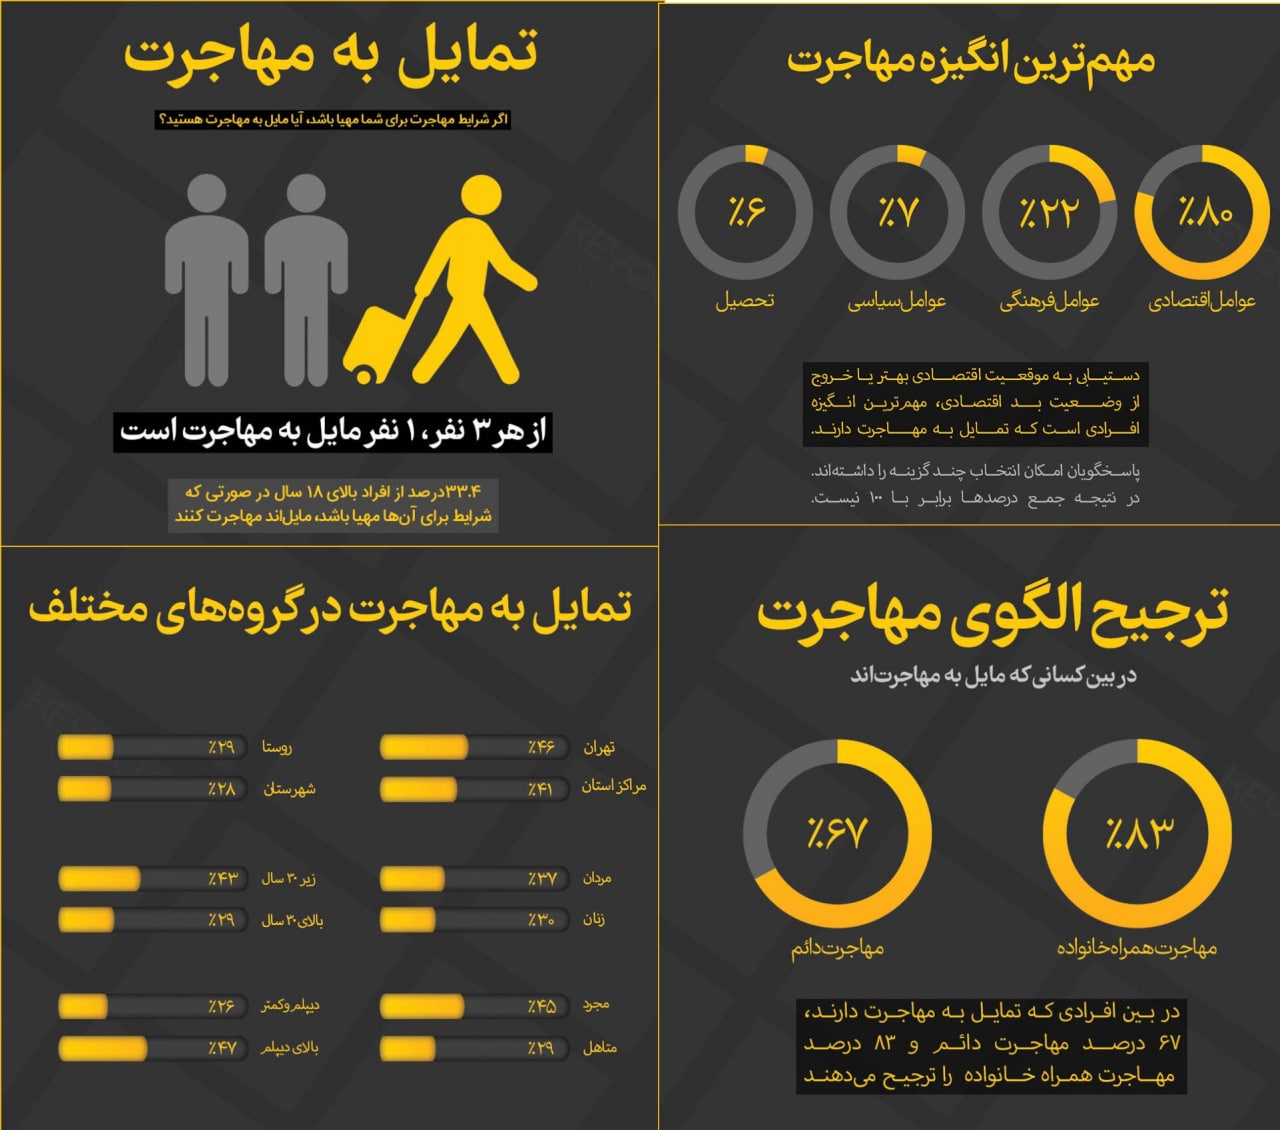 ضرورت مداخله گری در تمایل به مهاجرت 30 درصدی از ایران